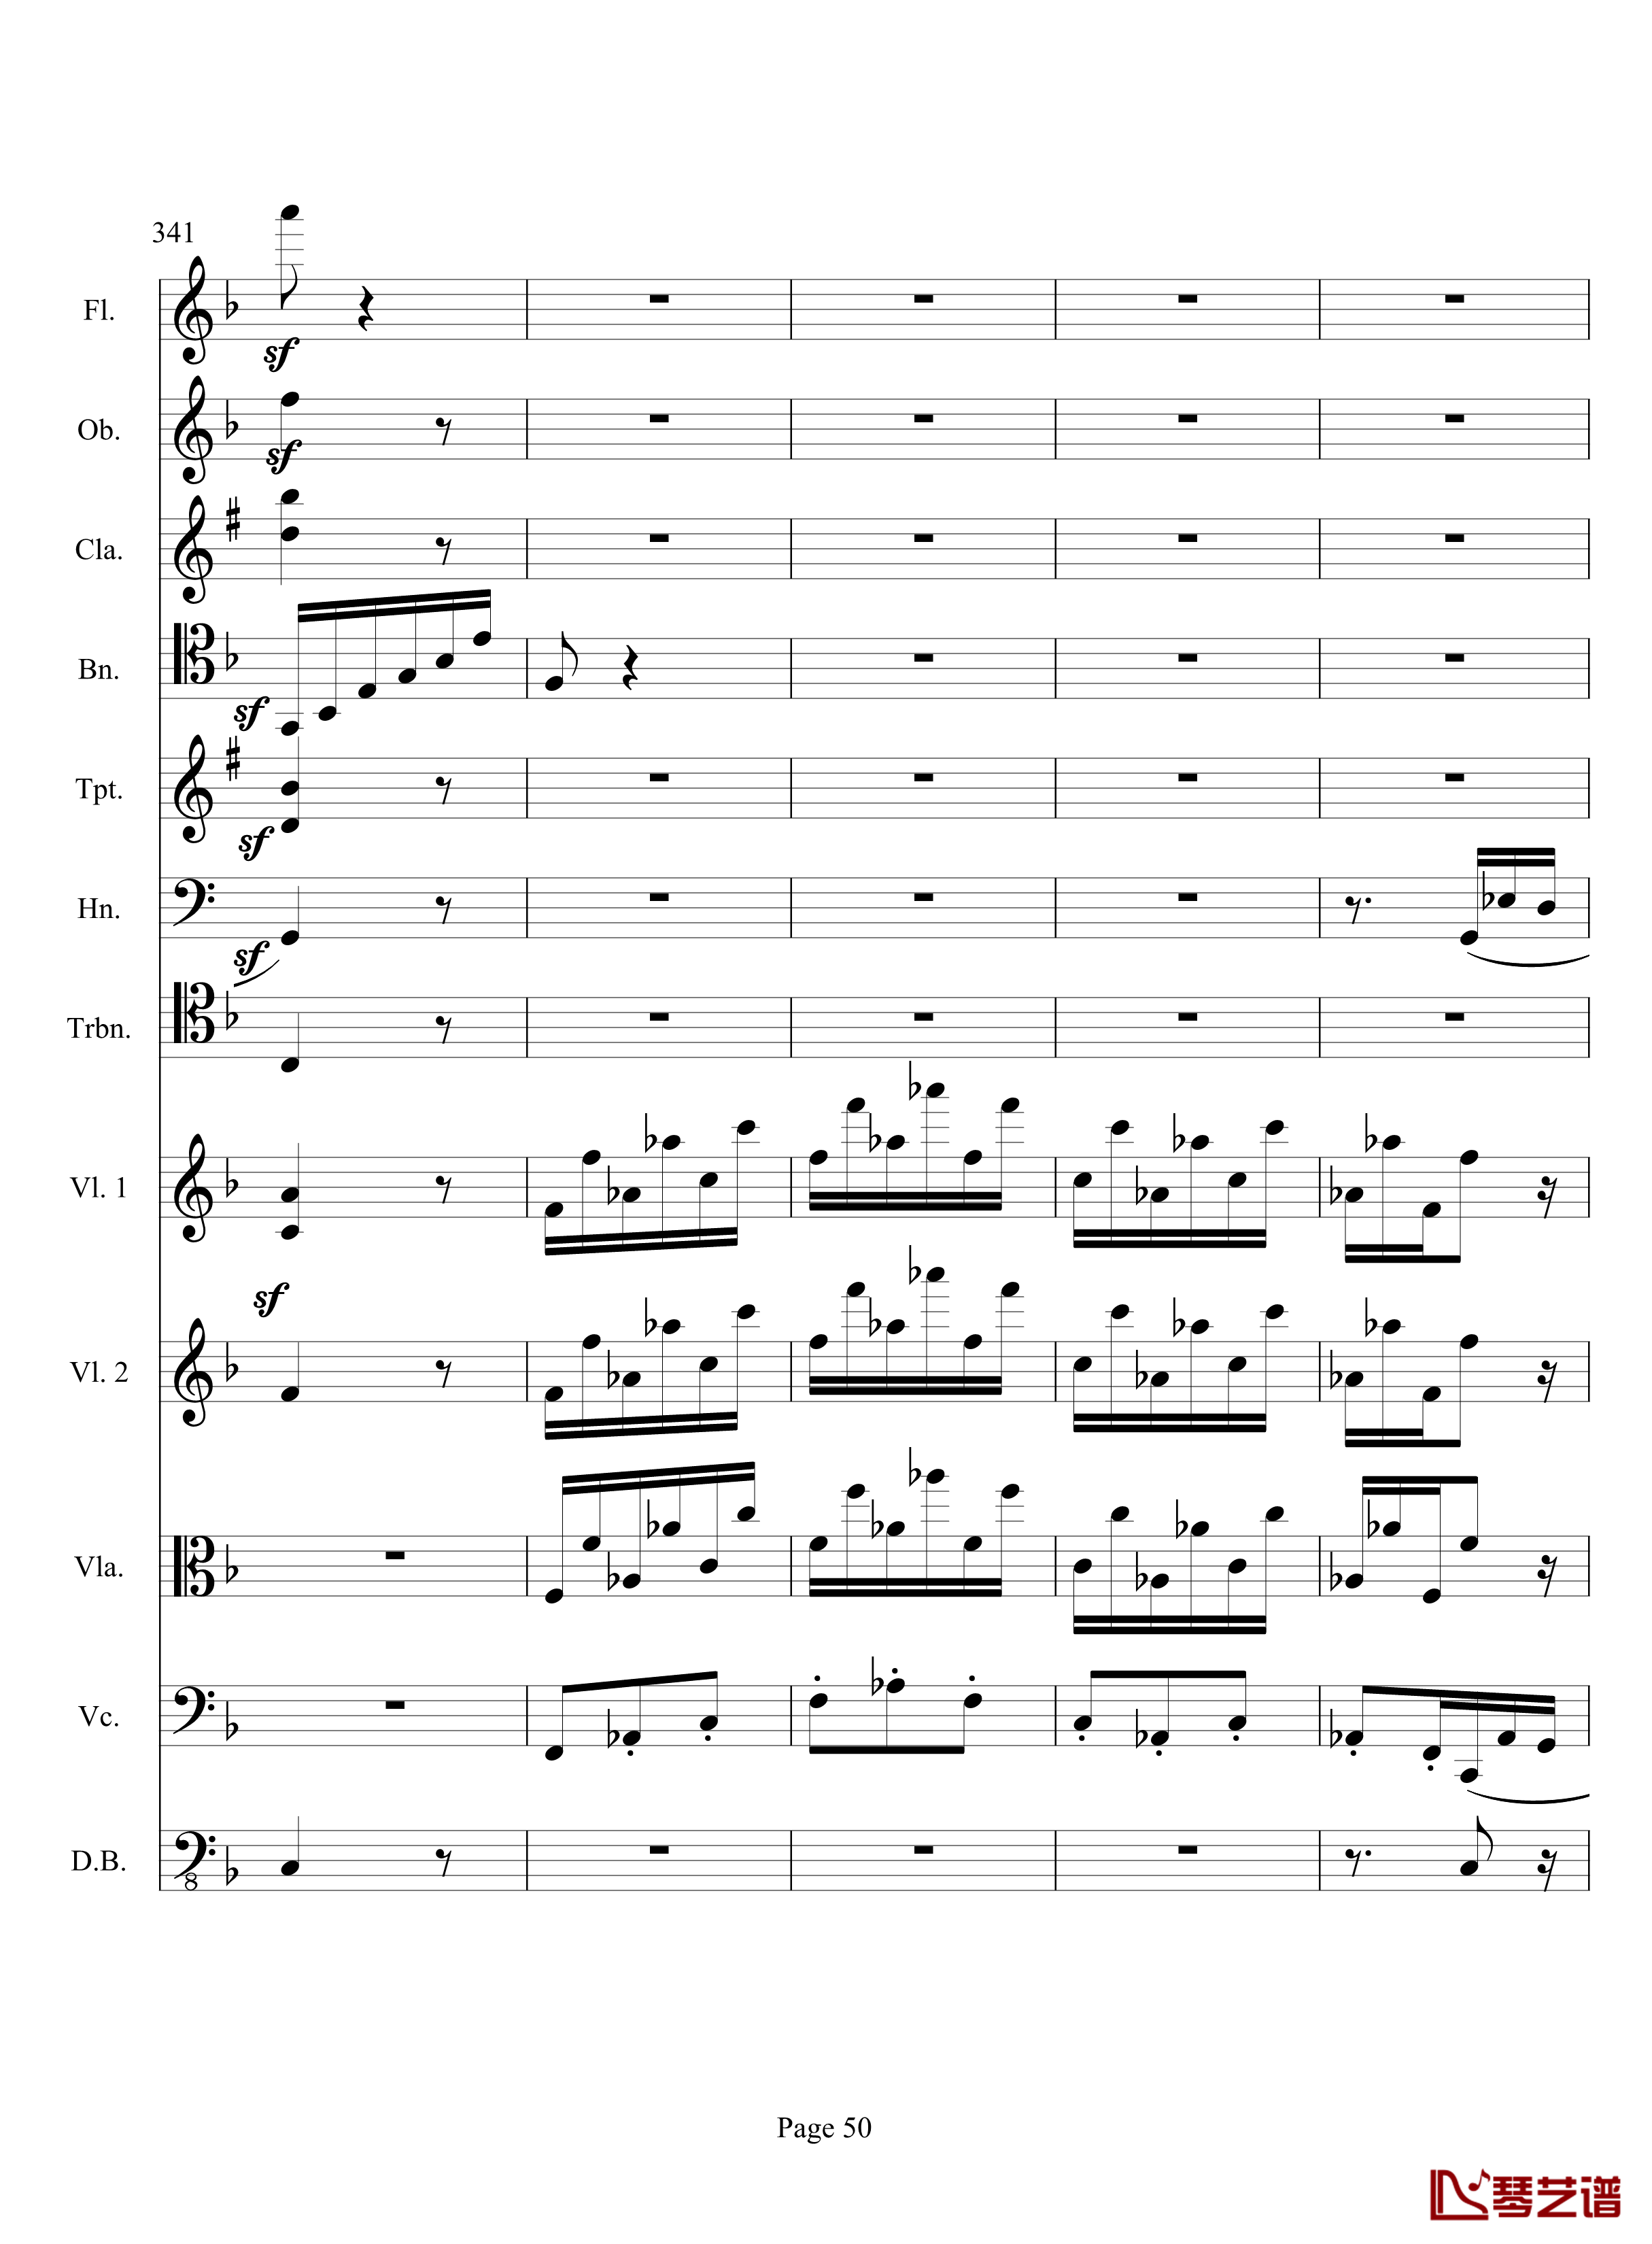 奏鸣曲之交响钢琴谱-第17首-Ⅲ-贝多芬-beethoven50